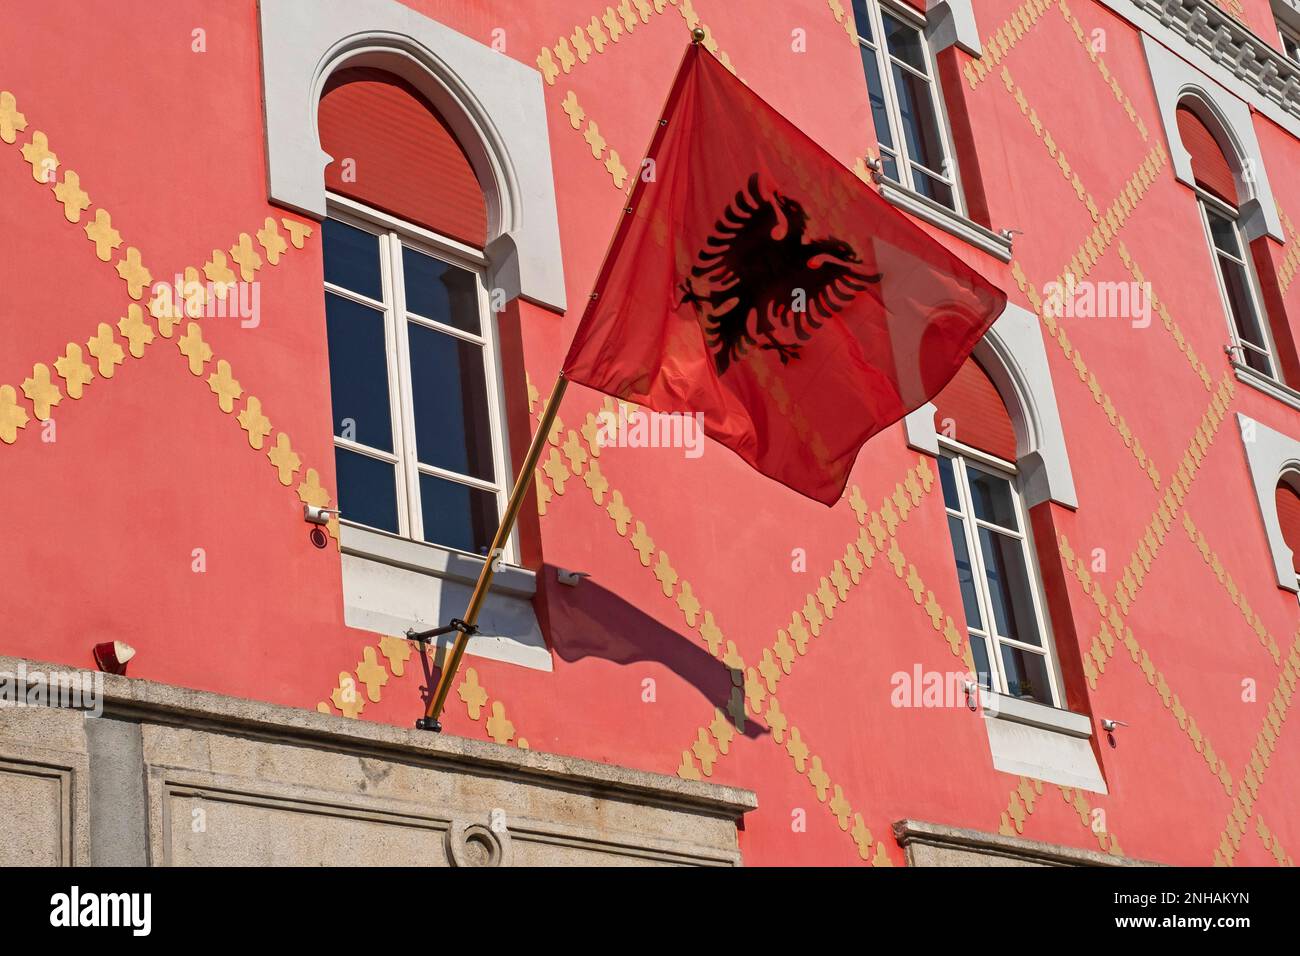 Drapeau rouge de l'Albanie avec un aigle noir à double tête silhouetté sur la façade à Tirana, capitale de l'Albanie Banque D'Images